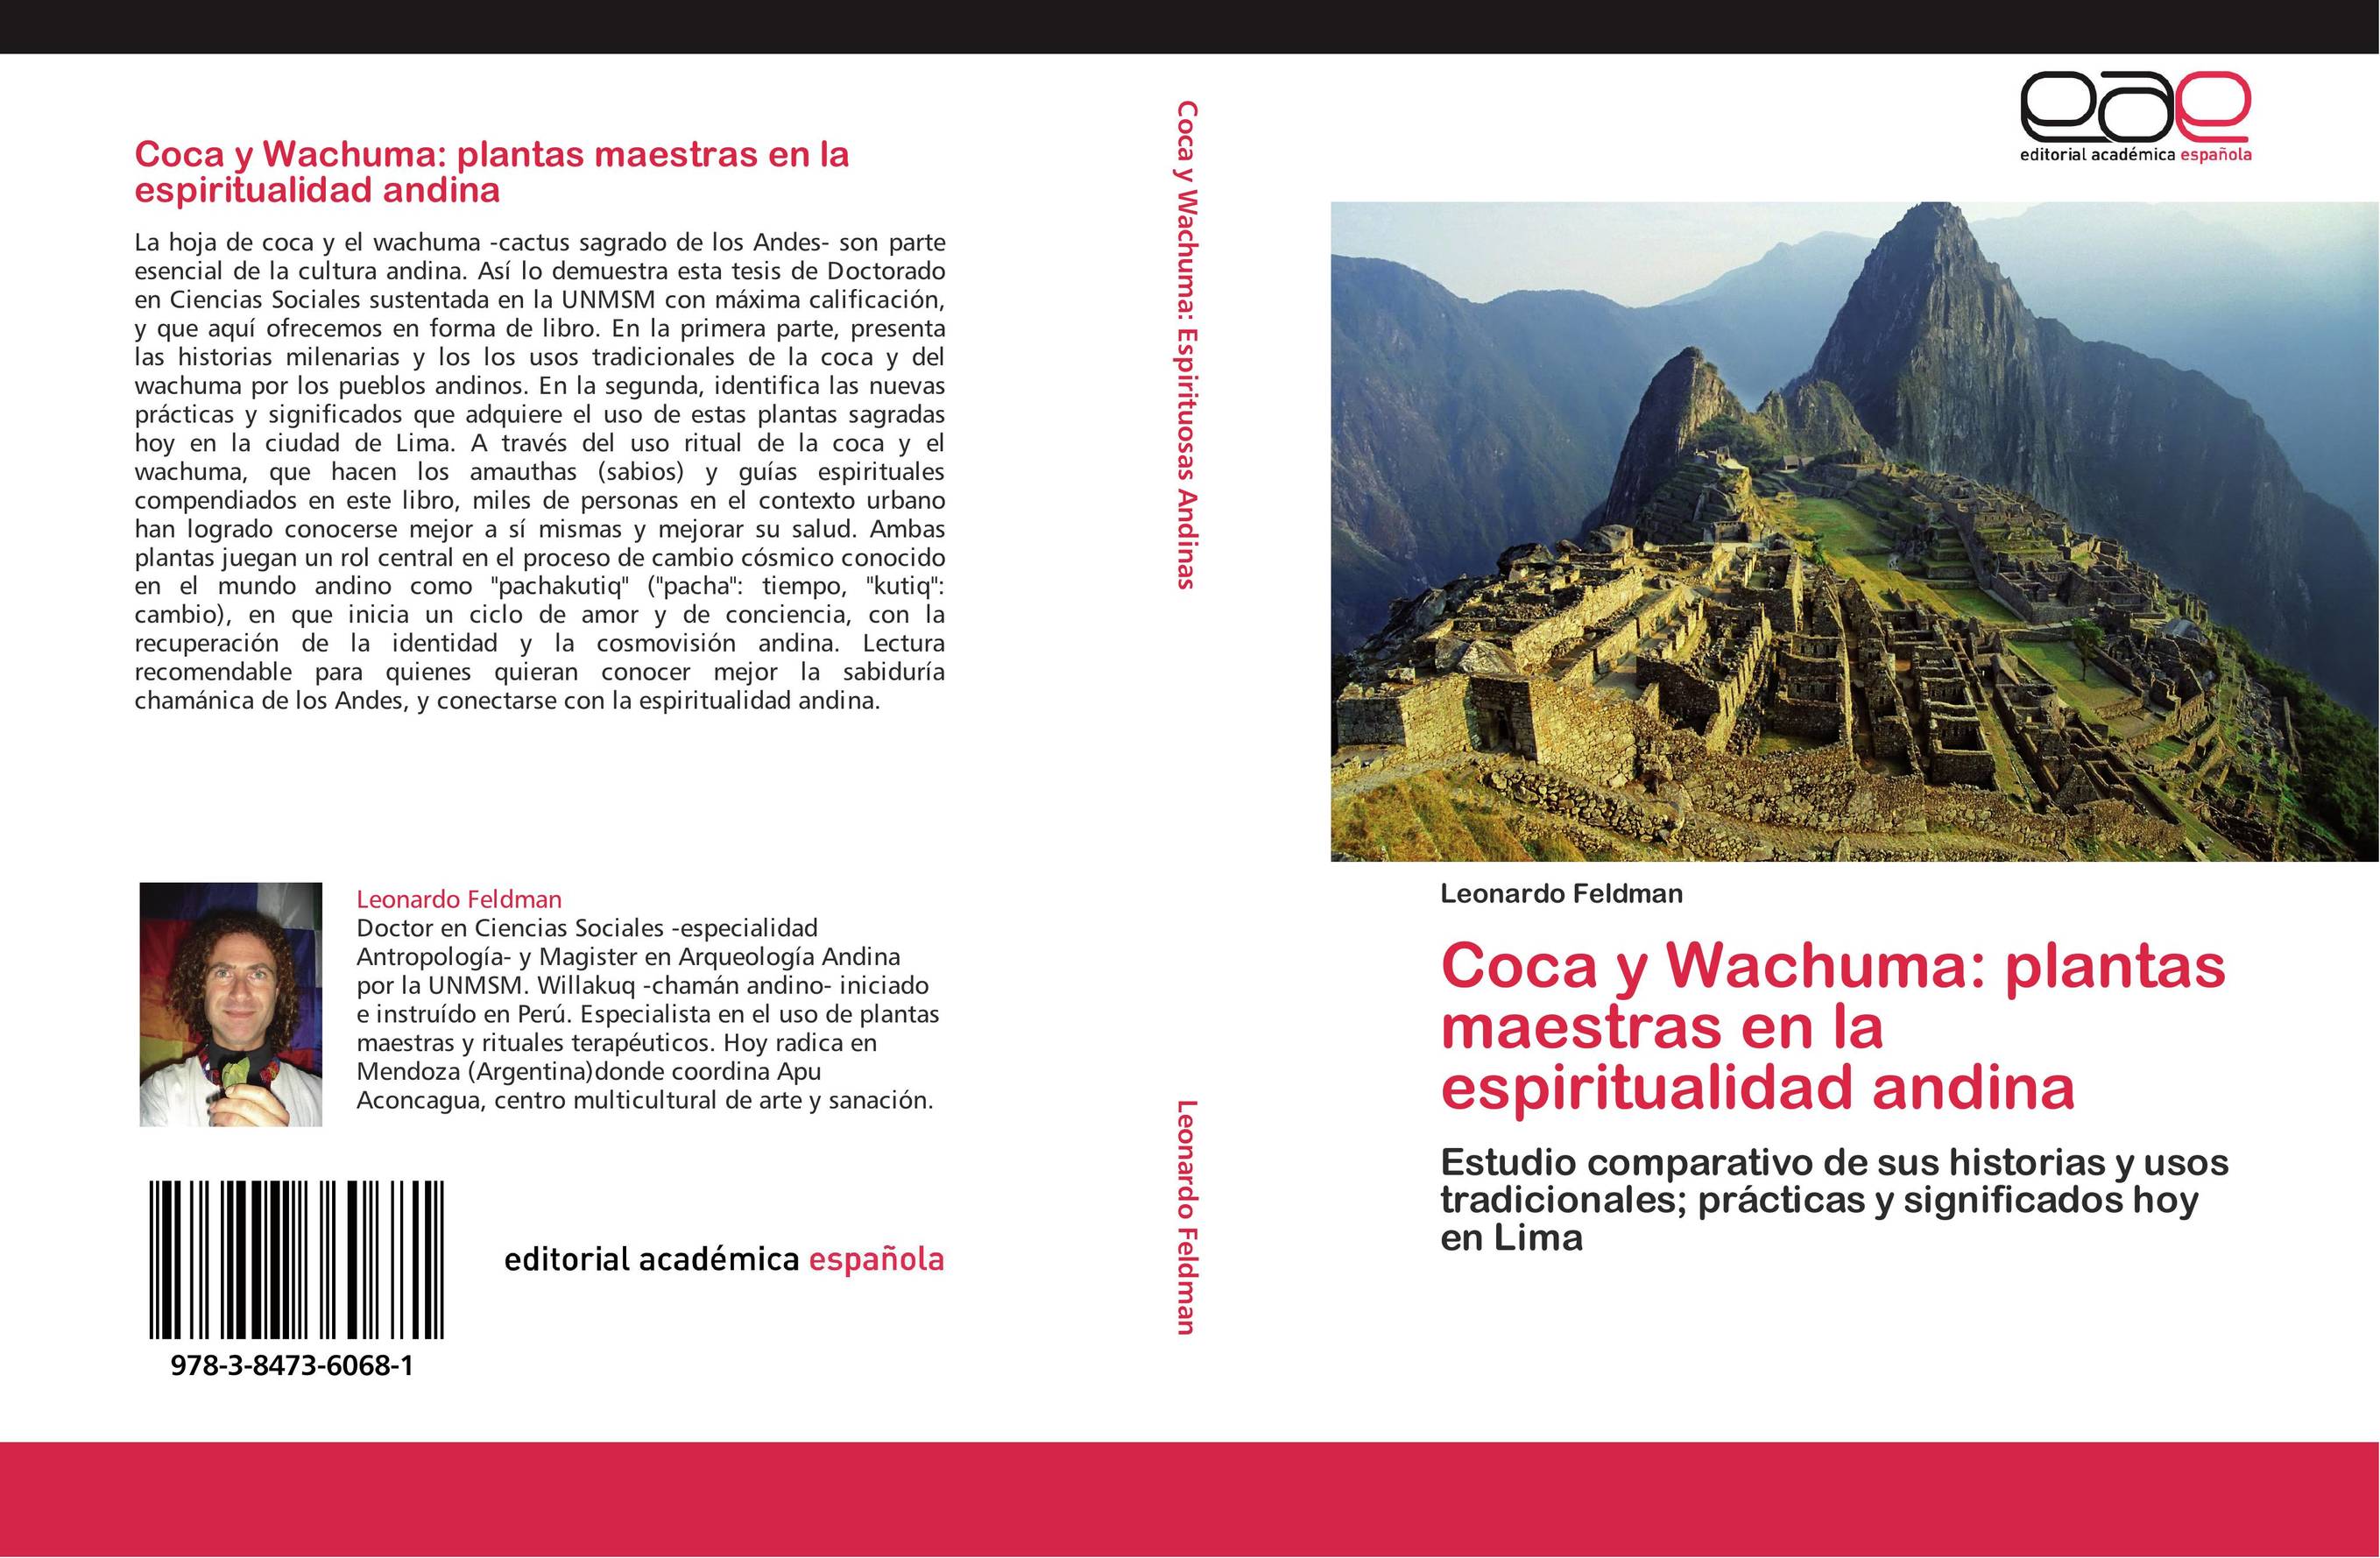 Coca y Wachuma: plantas maestras en la espiritualidad andina